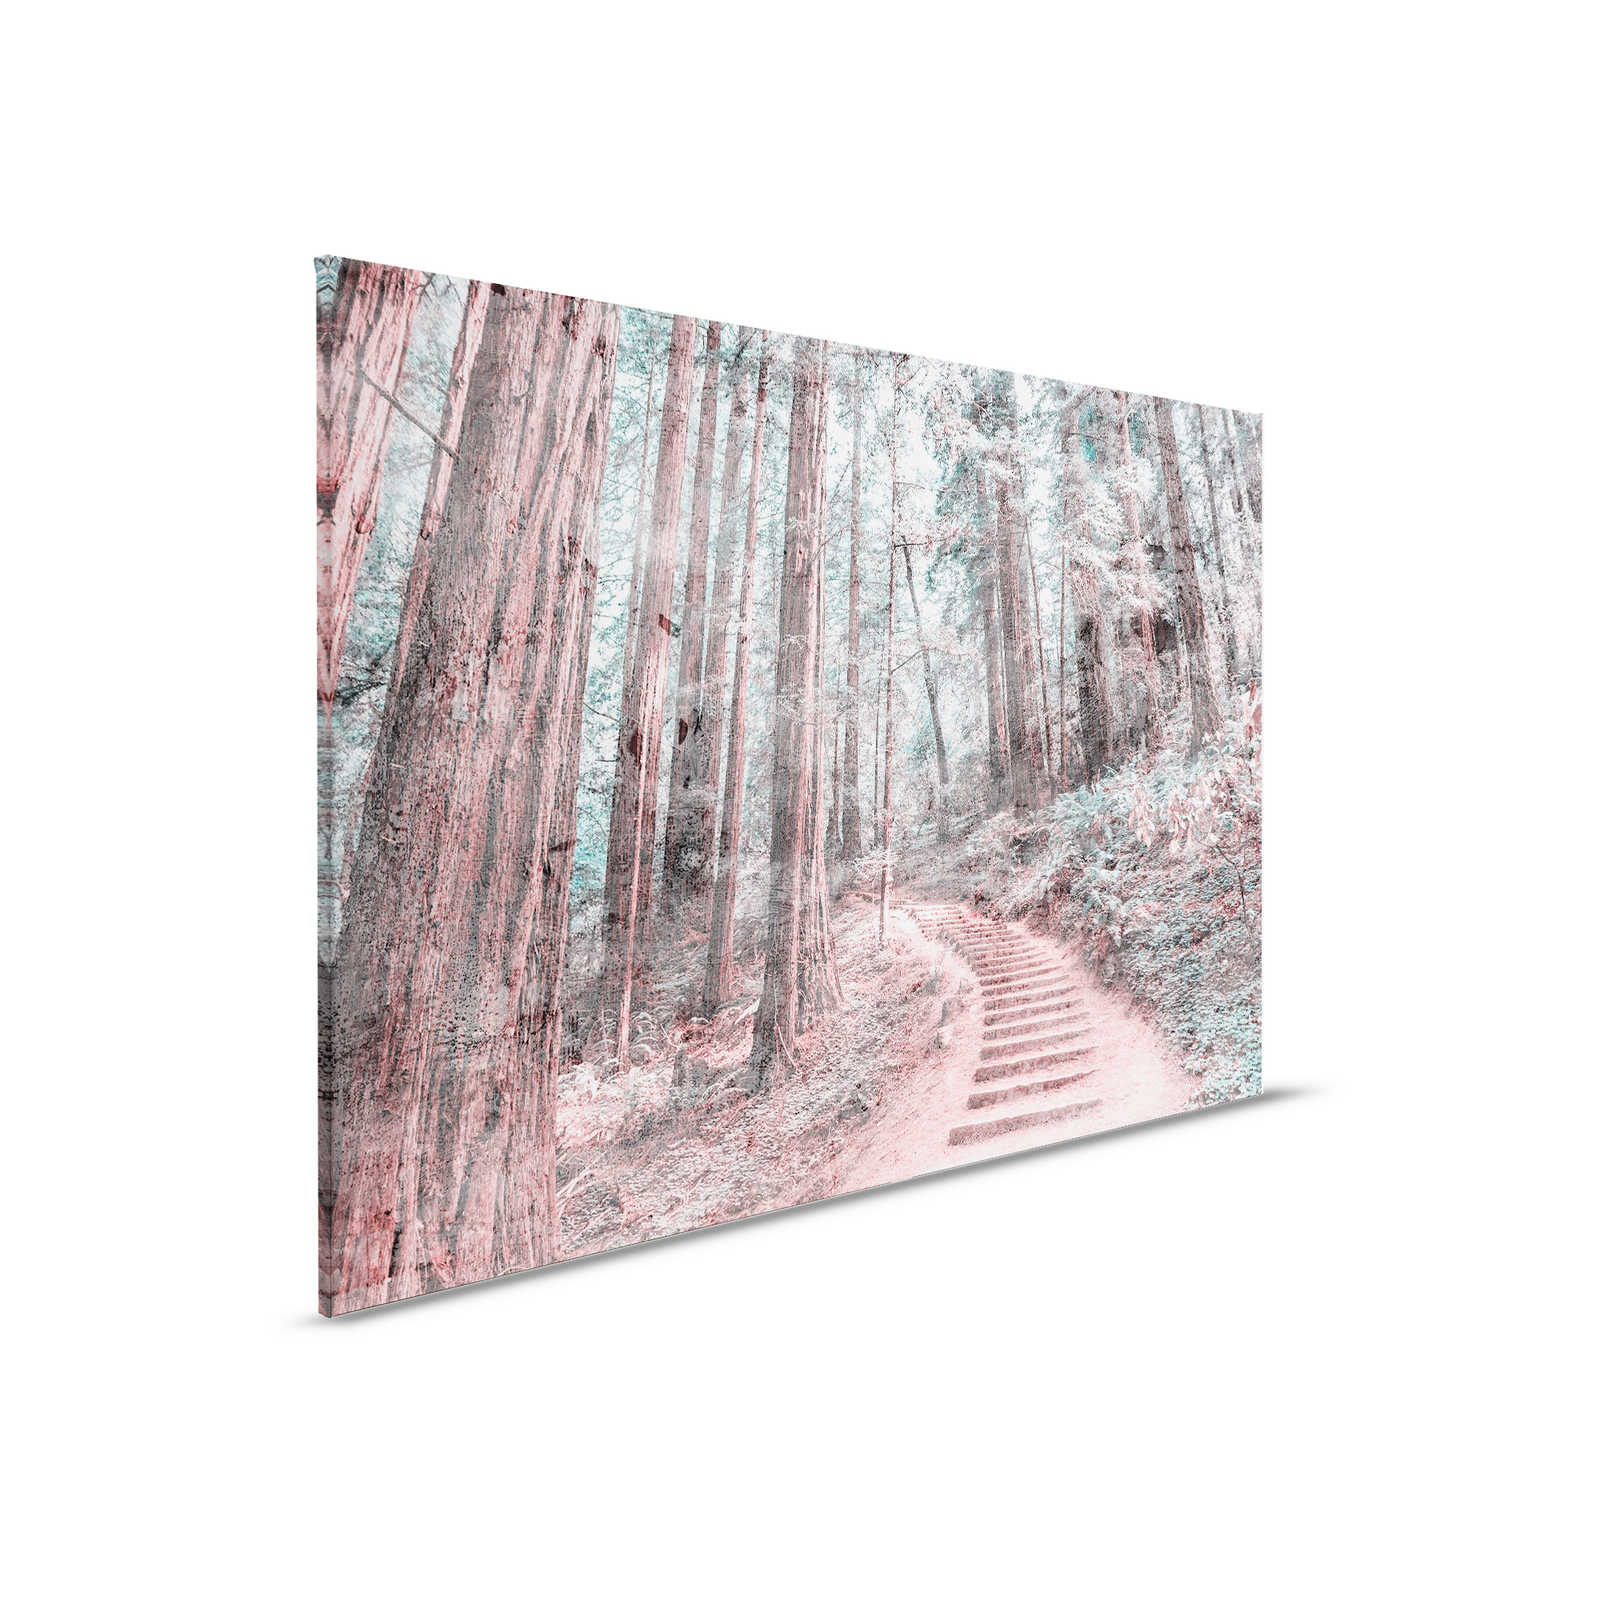             Leinwand mit Holztreppe durch den Wald | braun, grün, weiß – 0,90 m x 0,60 m
        